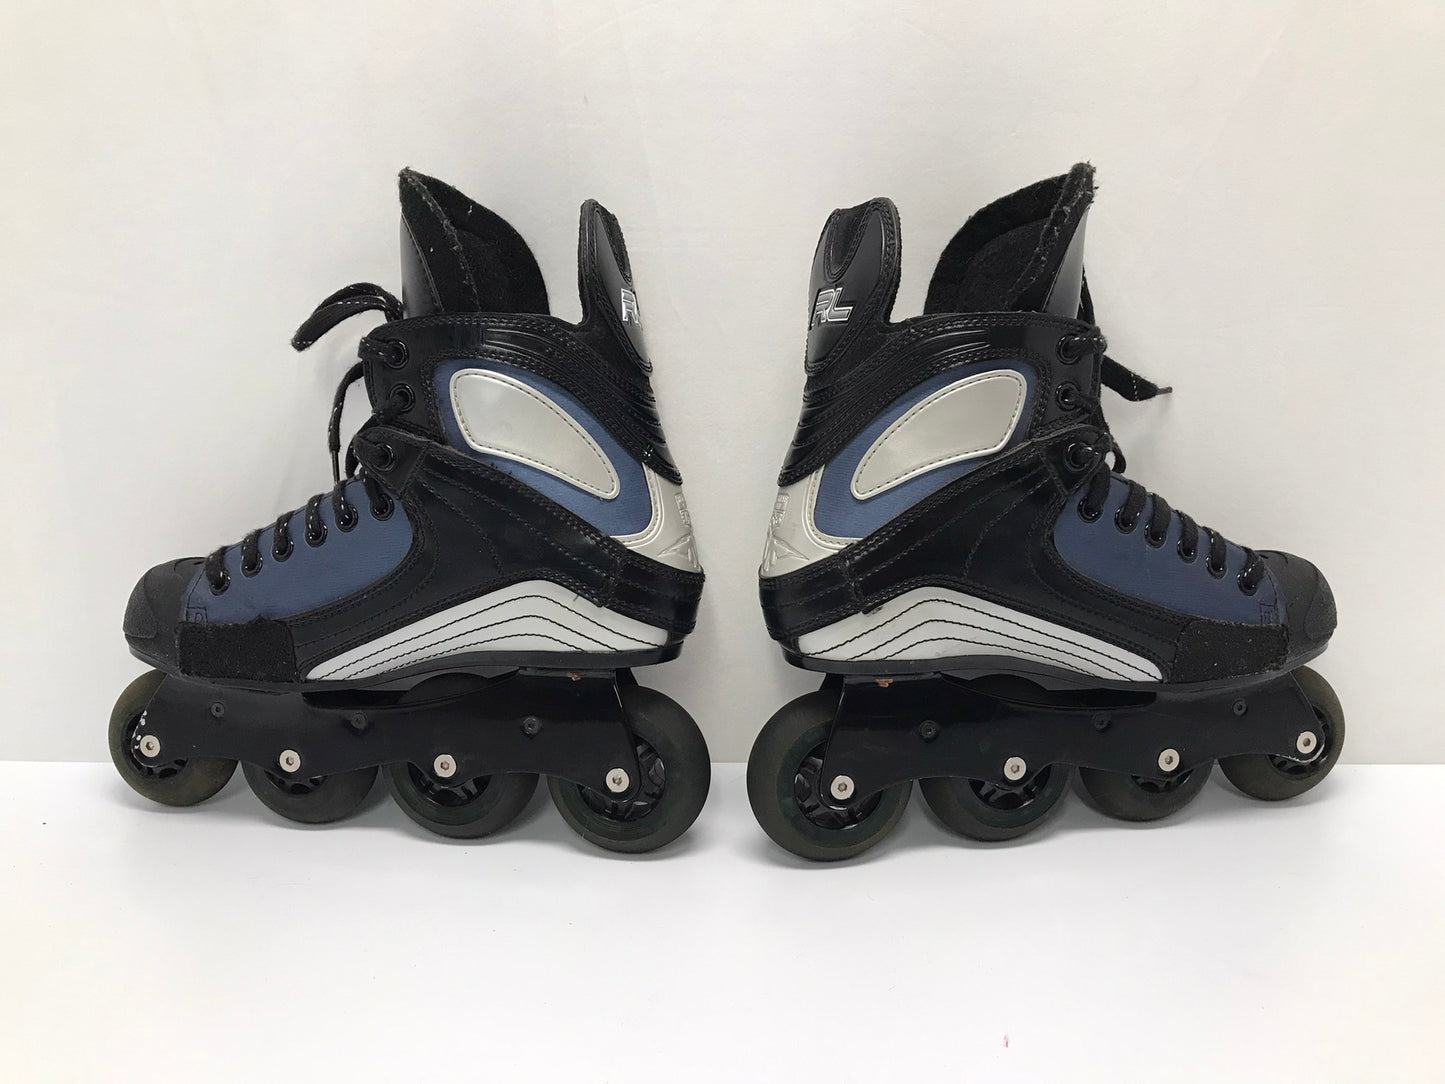 Hockey Roller Hockey Skates Men's Size 8 Shoe Size Mission Black Blue Excellent